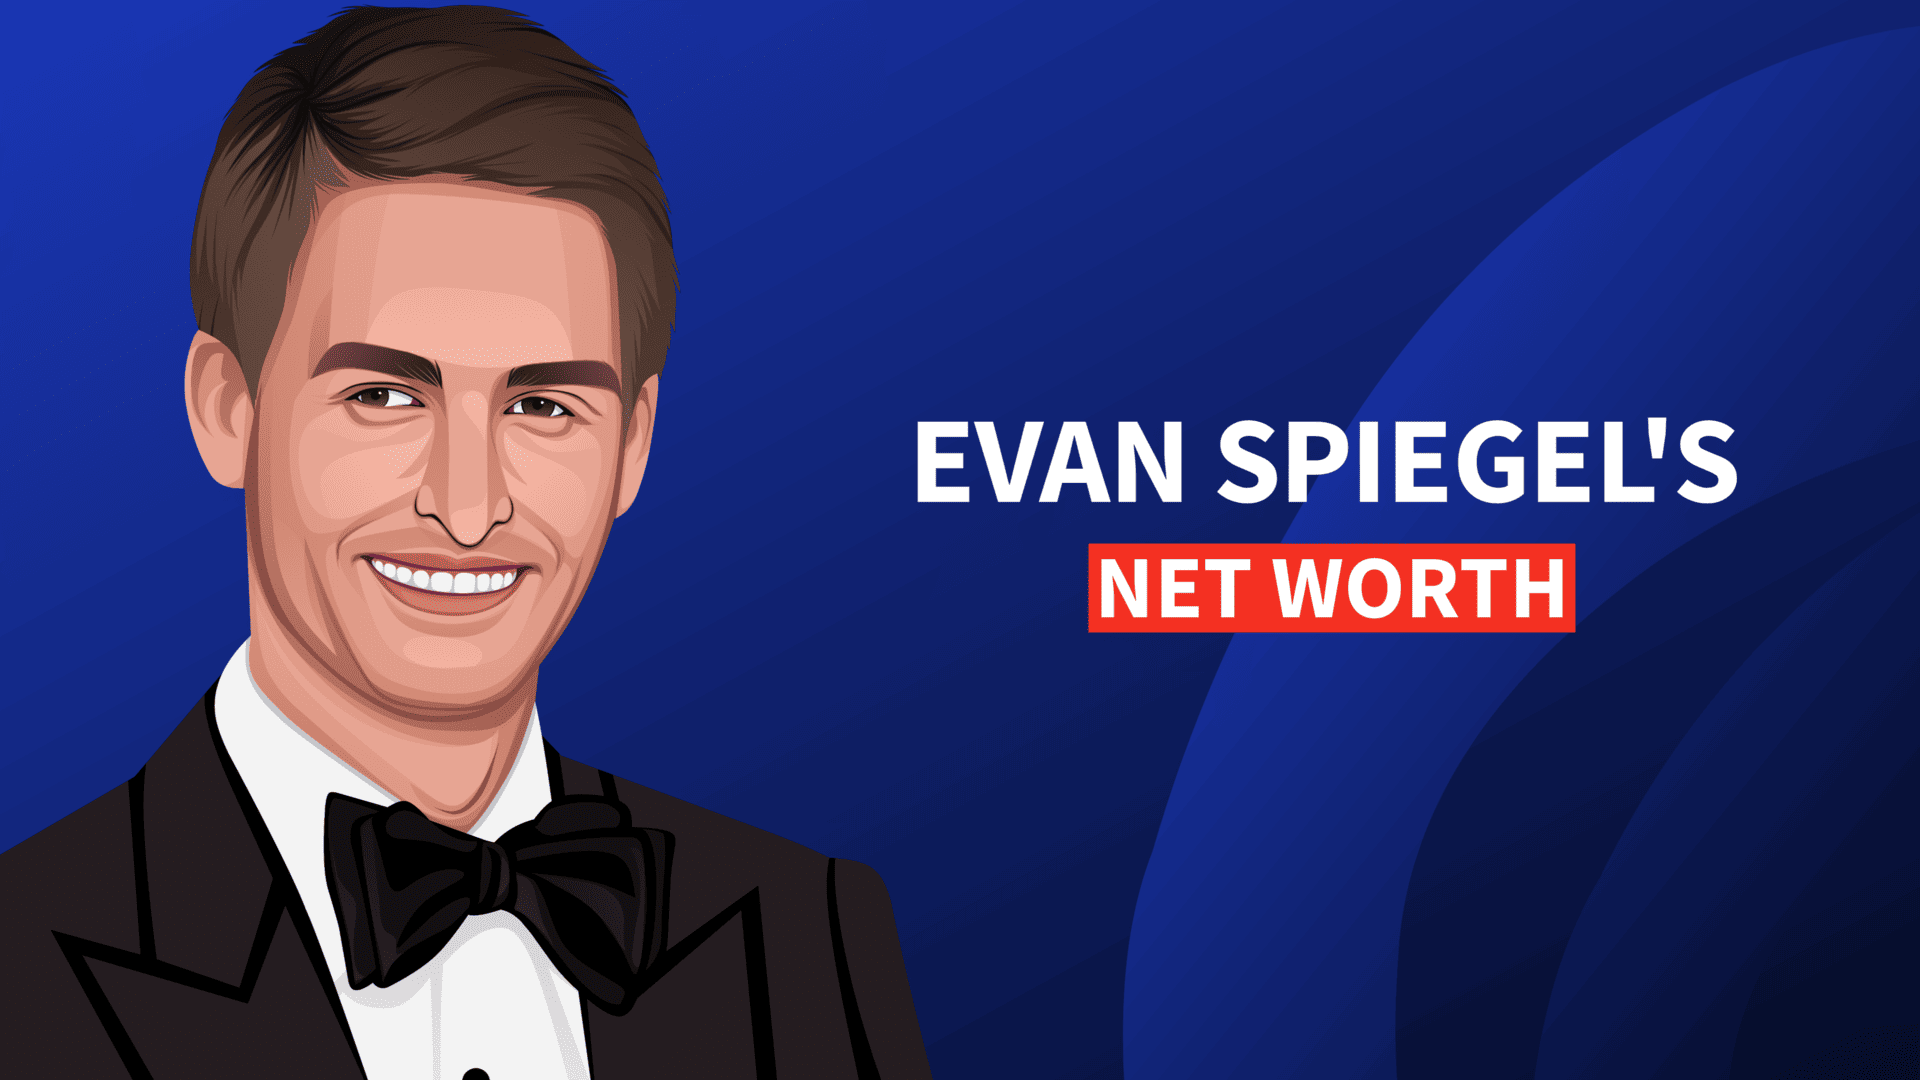 Evan Spiegel's Net Worth